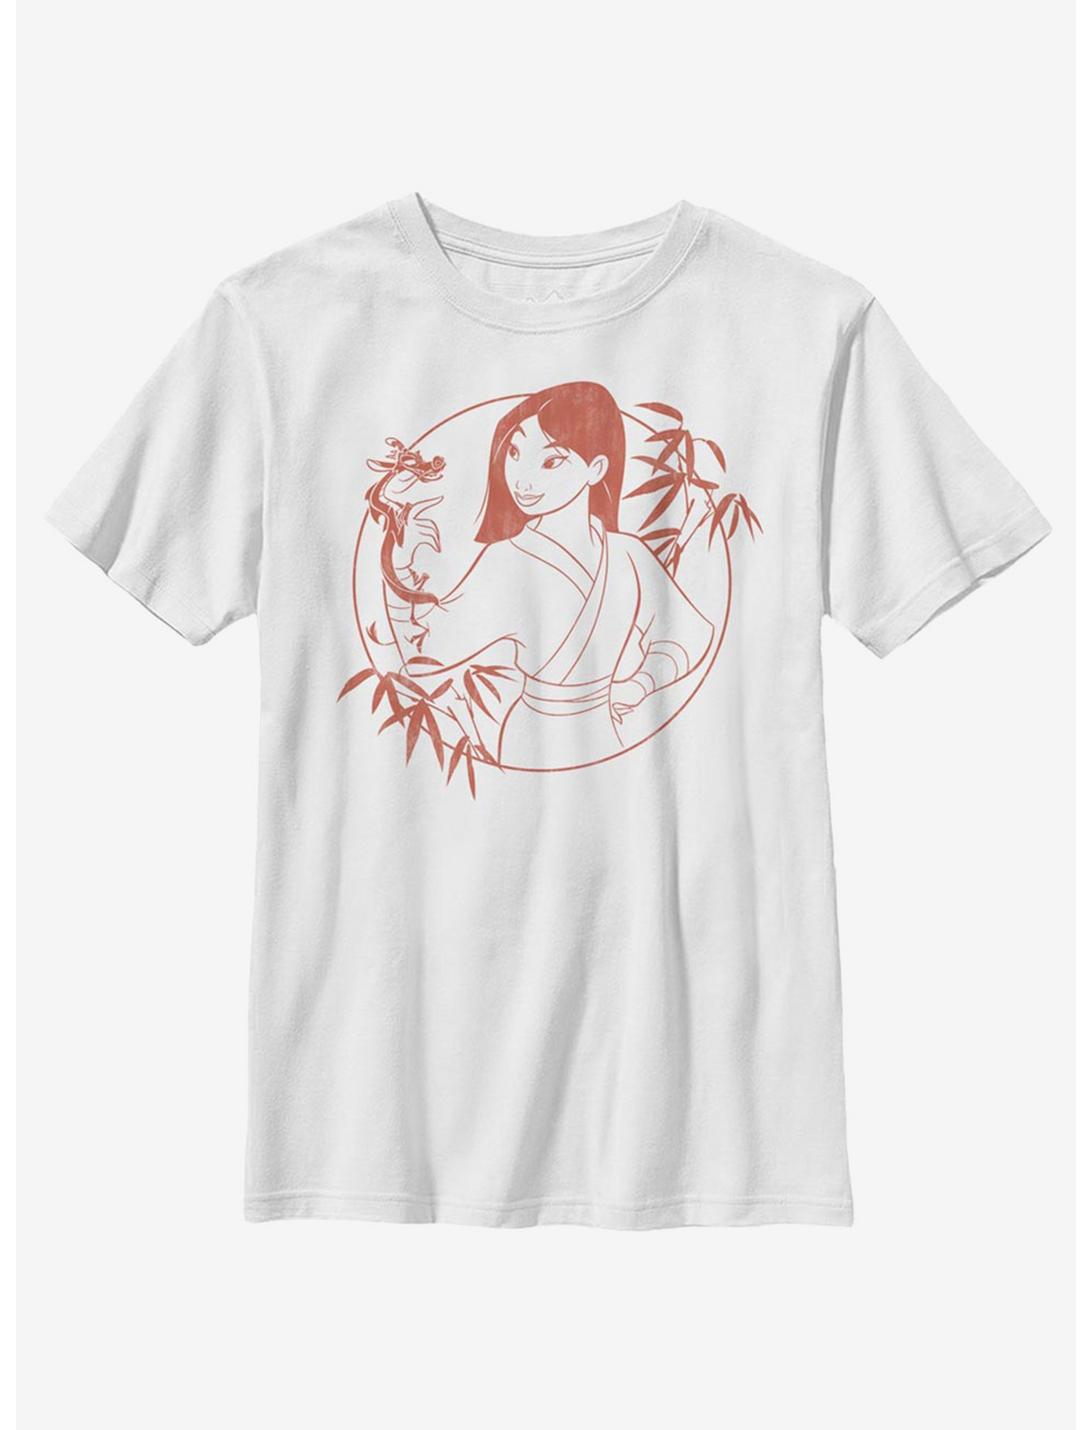 Disney Mulan Bamboo Youth T-Shirt, WHITE, hi-res